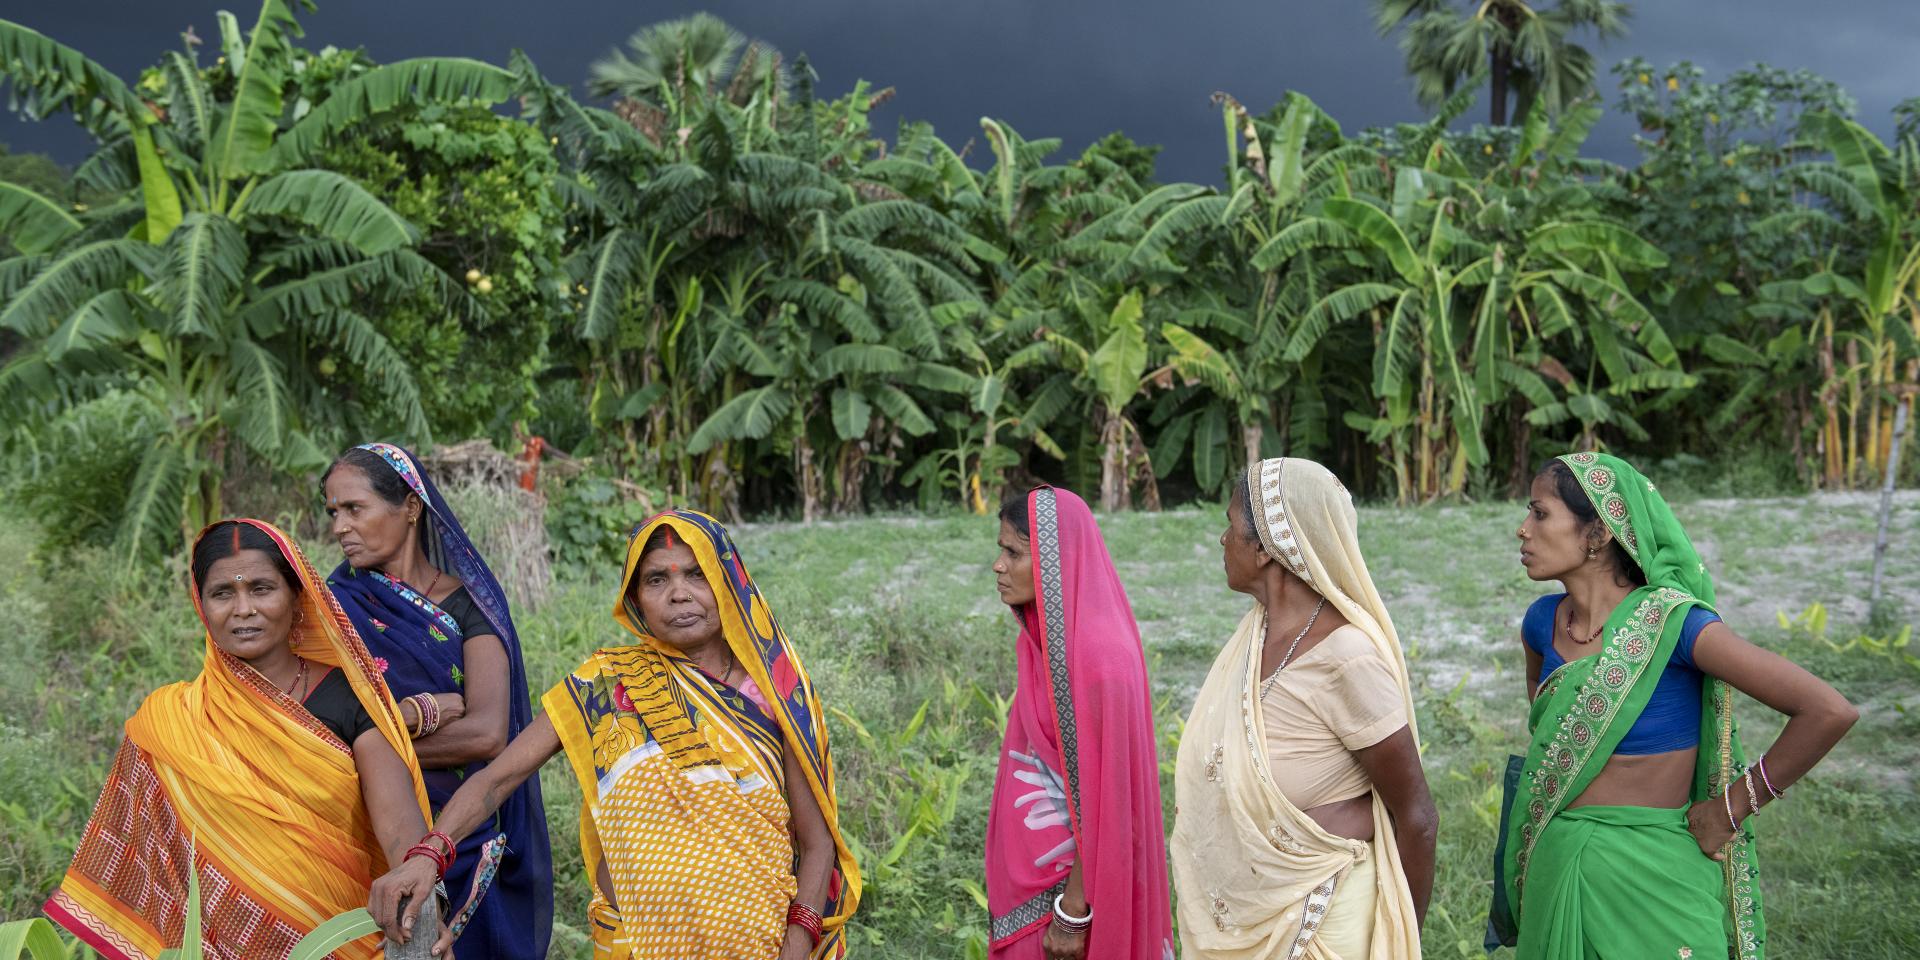 Women farmers walk across a field in front of a blackened rainy sky